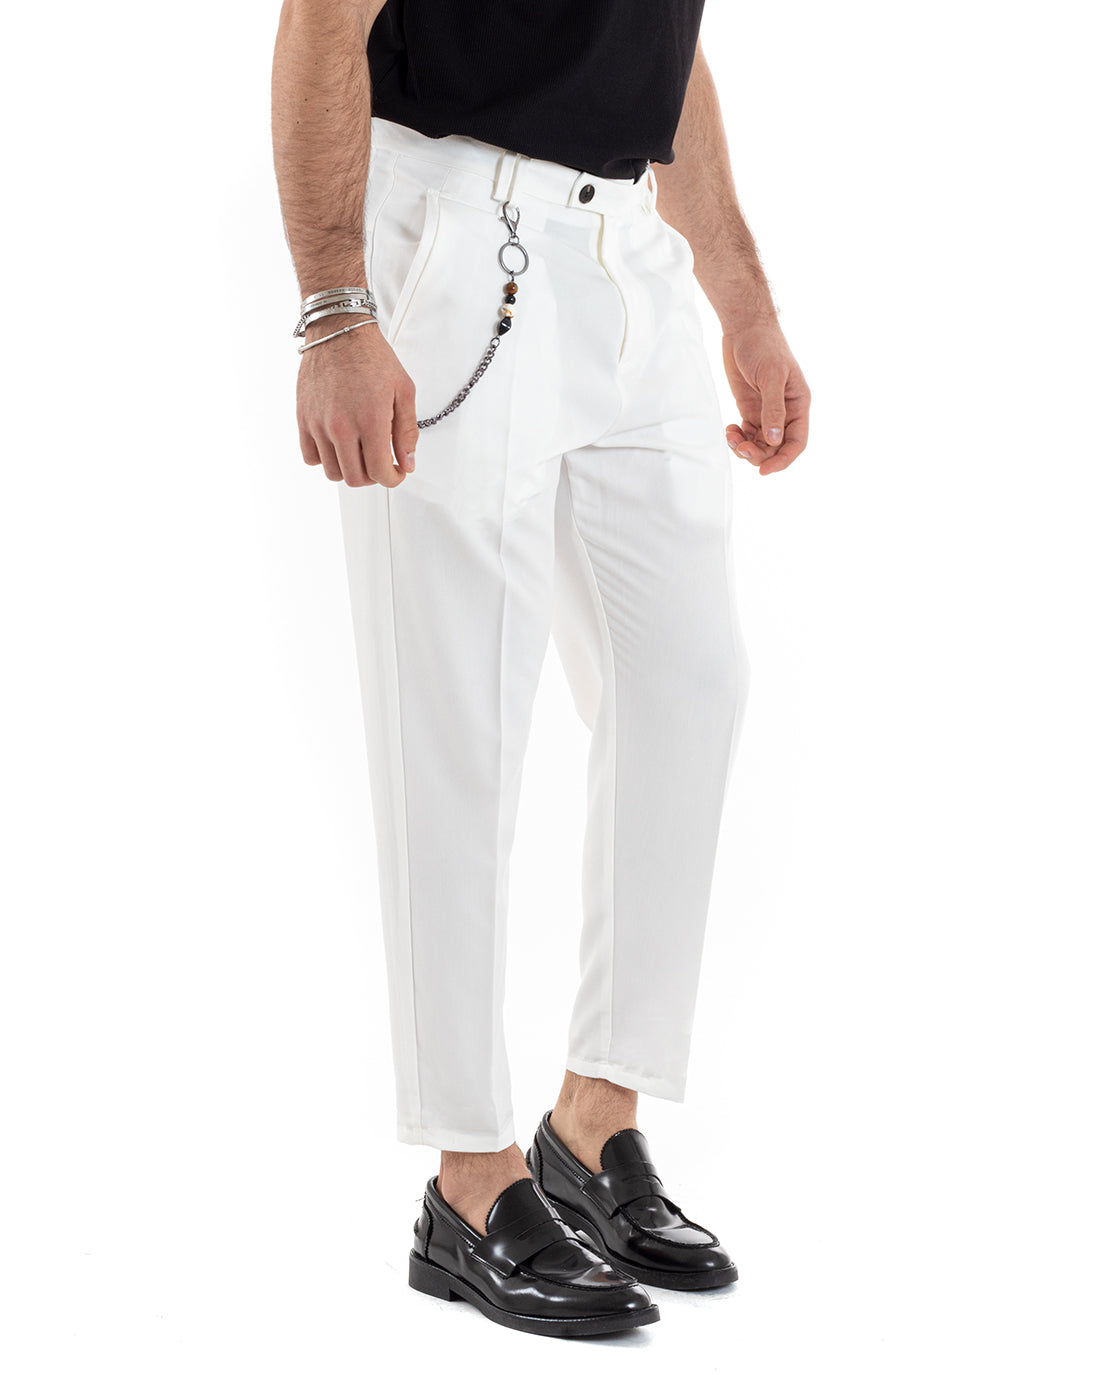 Pantaloni Uomo Viscosa Tasca America Bianco Abbottonatura Allungata Capri Sartoriale GIOSAL-P5979A